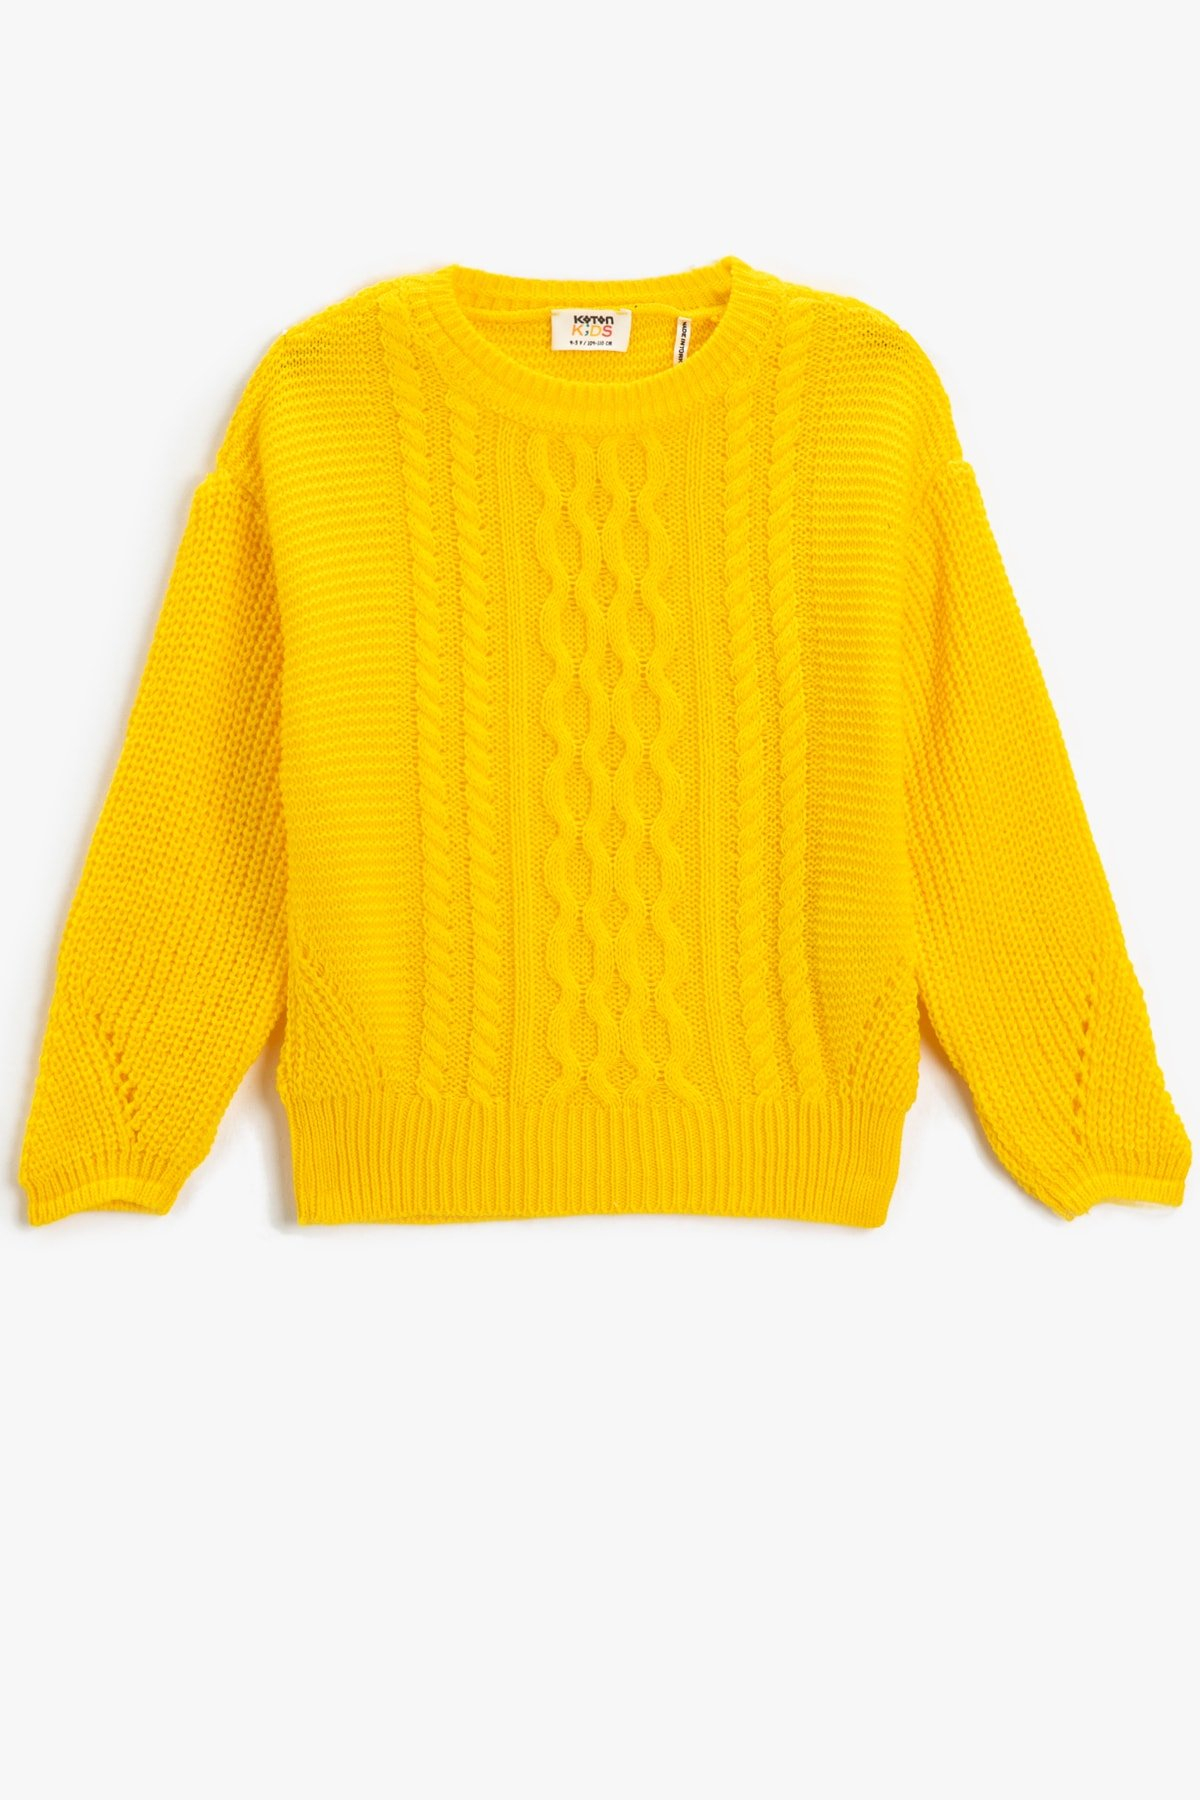 Koton Girls' Neon Yellow Sweater